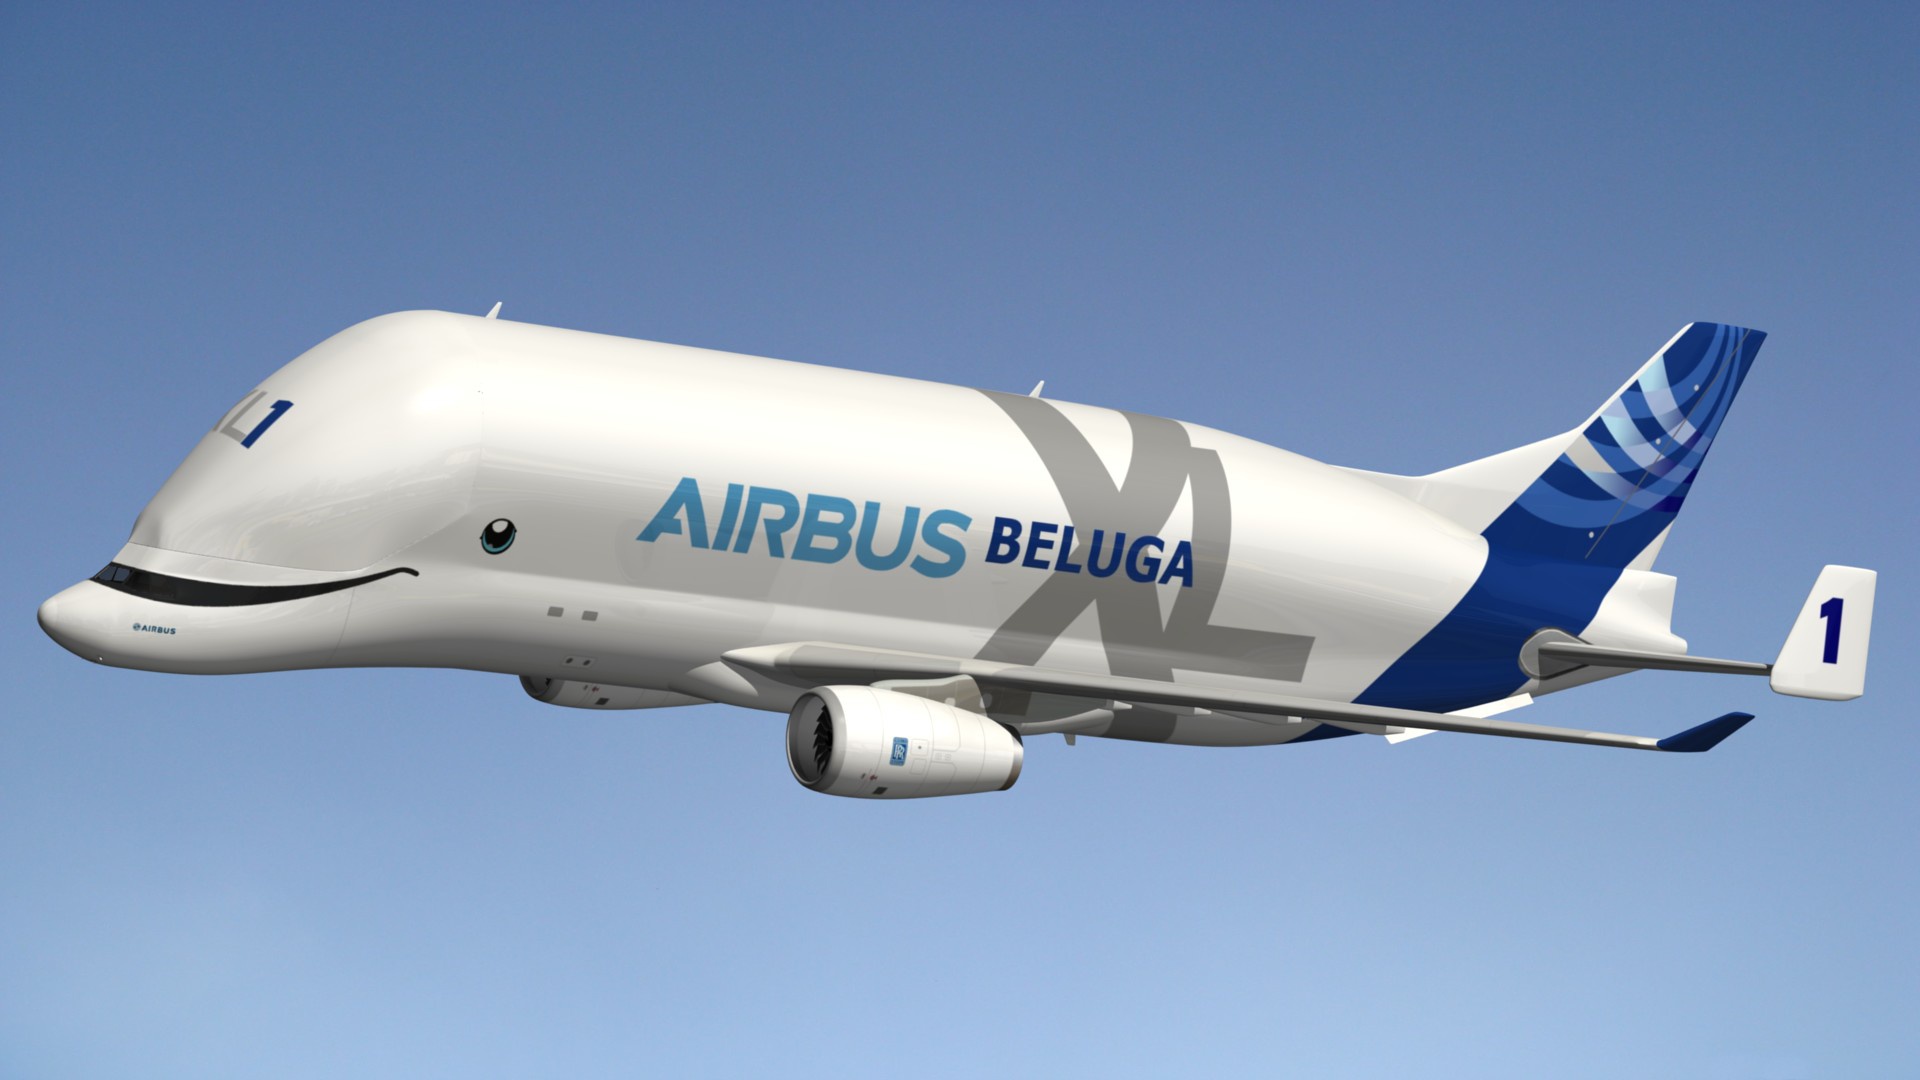 vehicles, airbus beluga, airbus, aircraft, transport aircraft